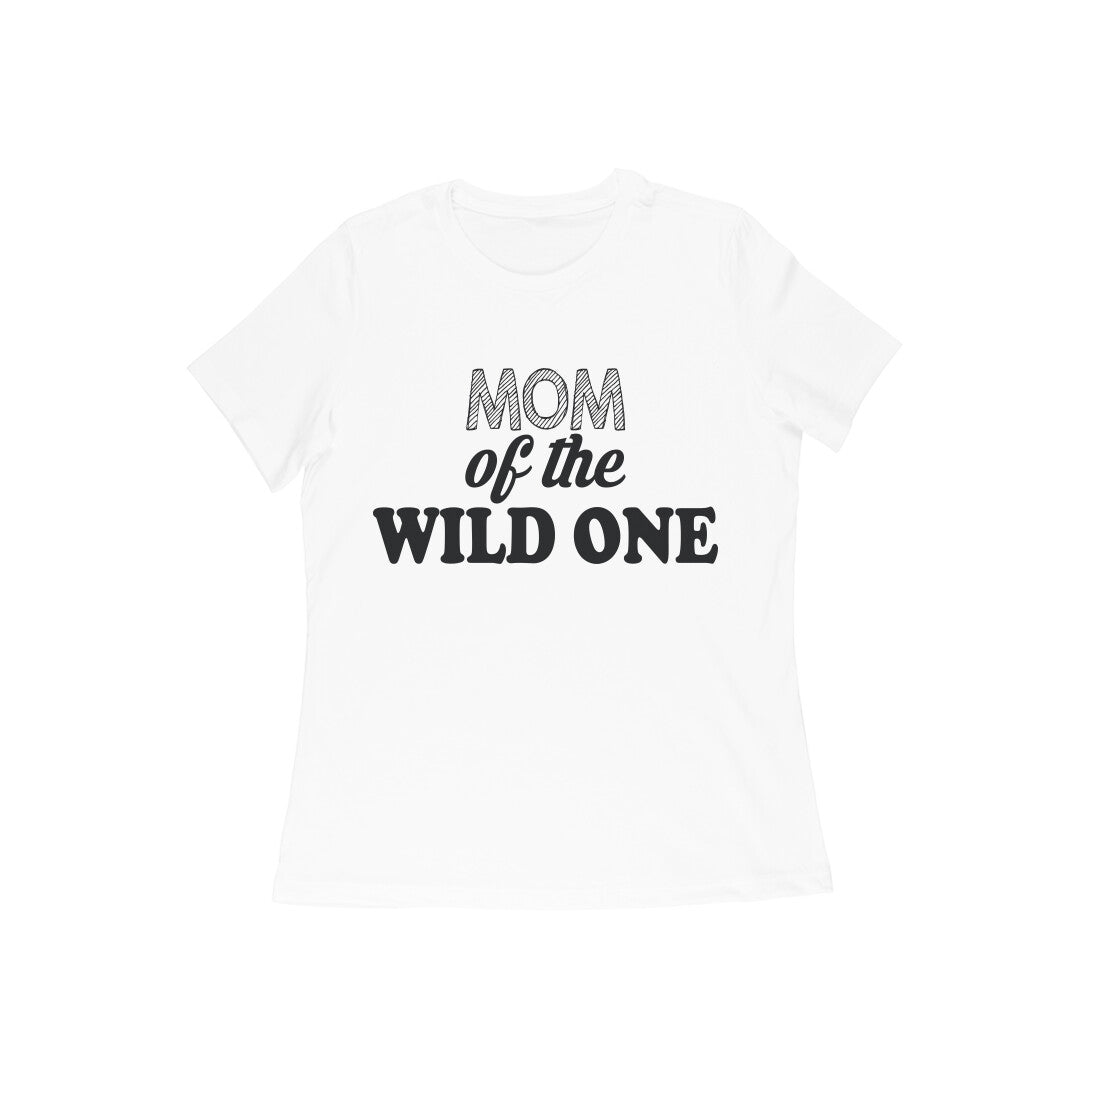 WOMEN'S ROUND NECK T-SHIRT - Mom of the wild one 1 puraidoprints